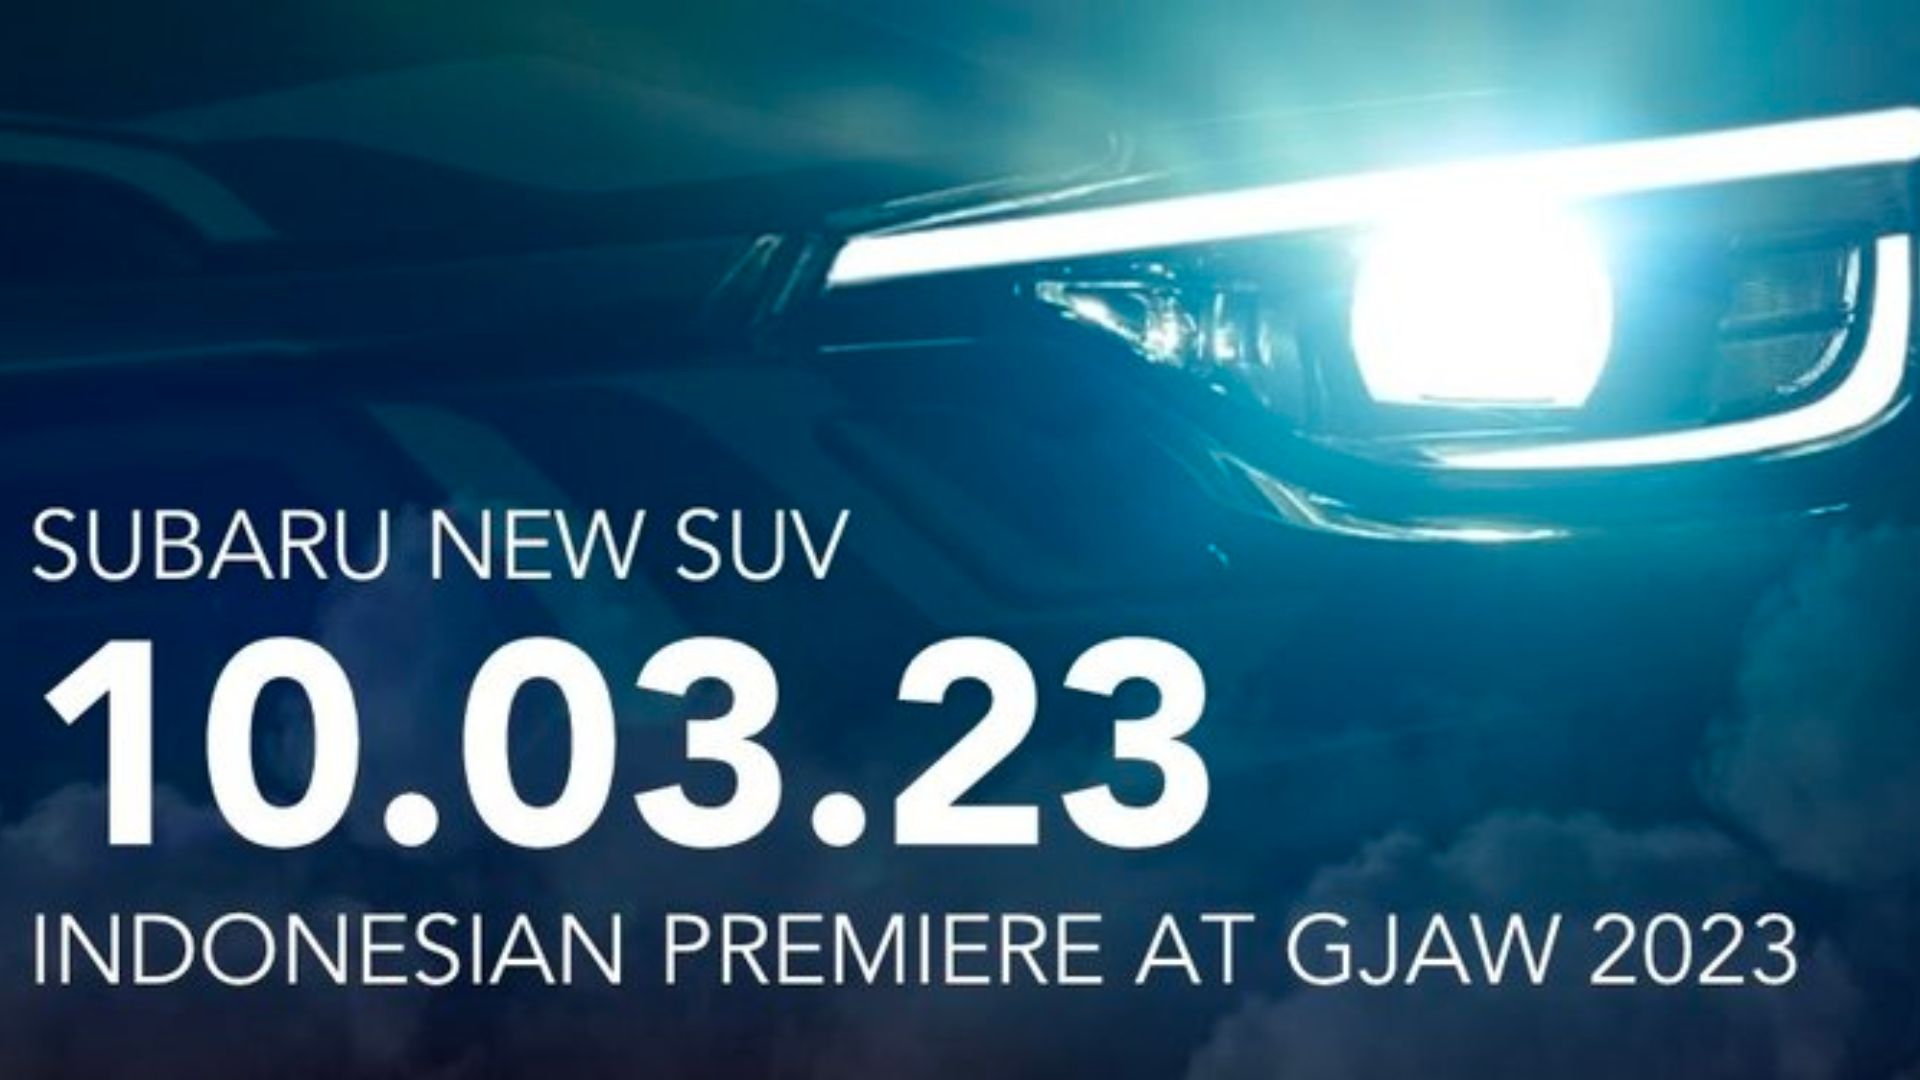 Subaru Crosstrek coming soon to ASEAN teaser